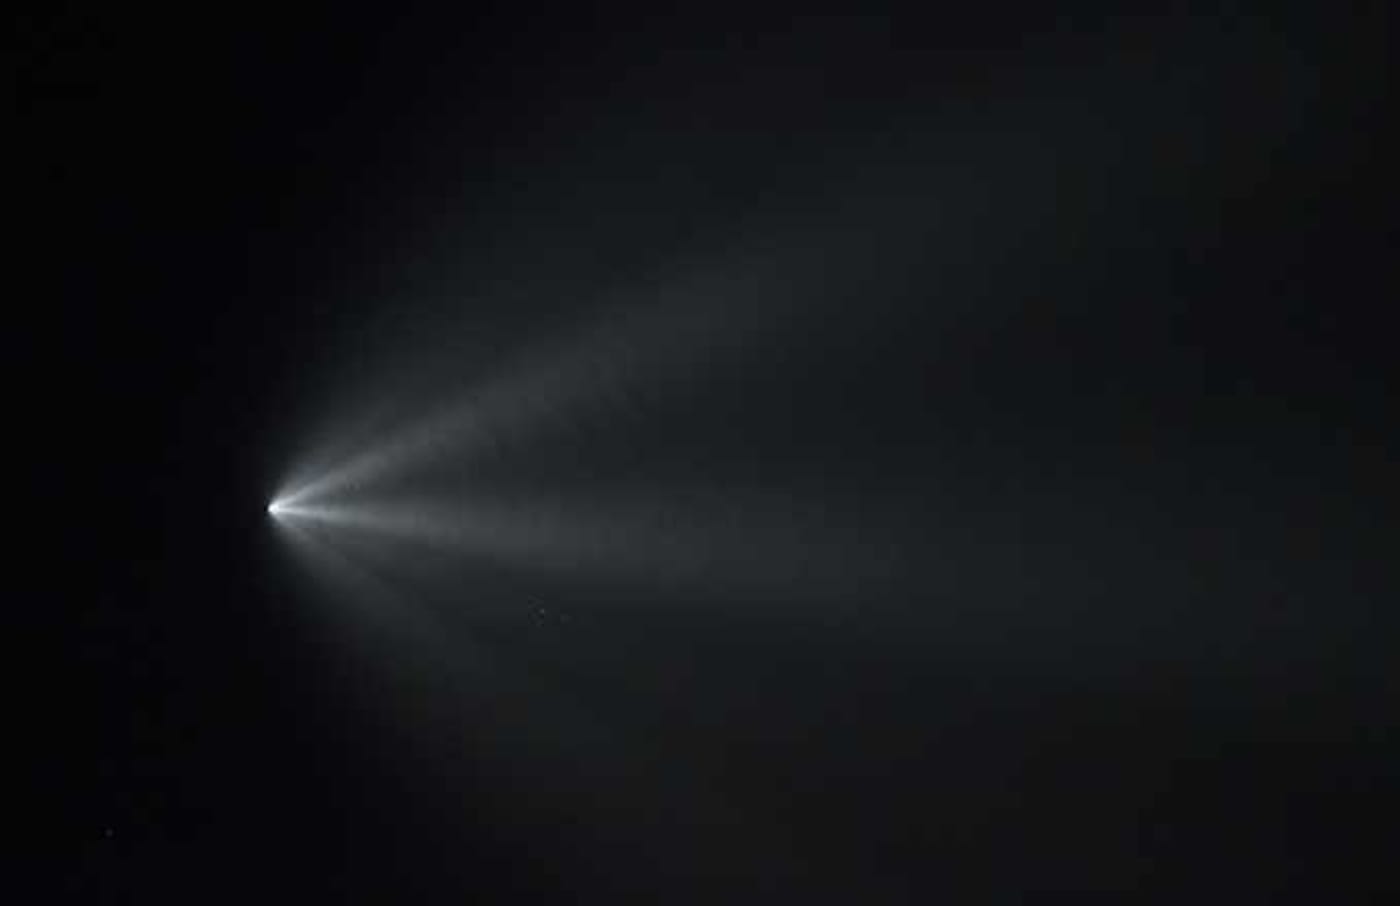 SpaceX rocket night time image